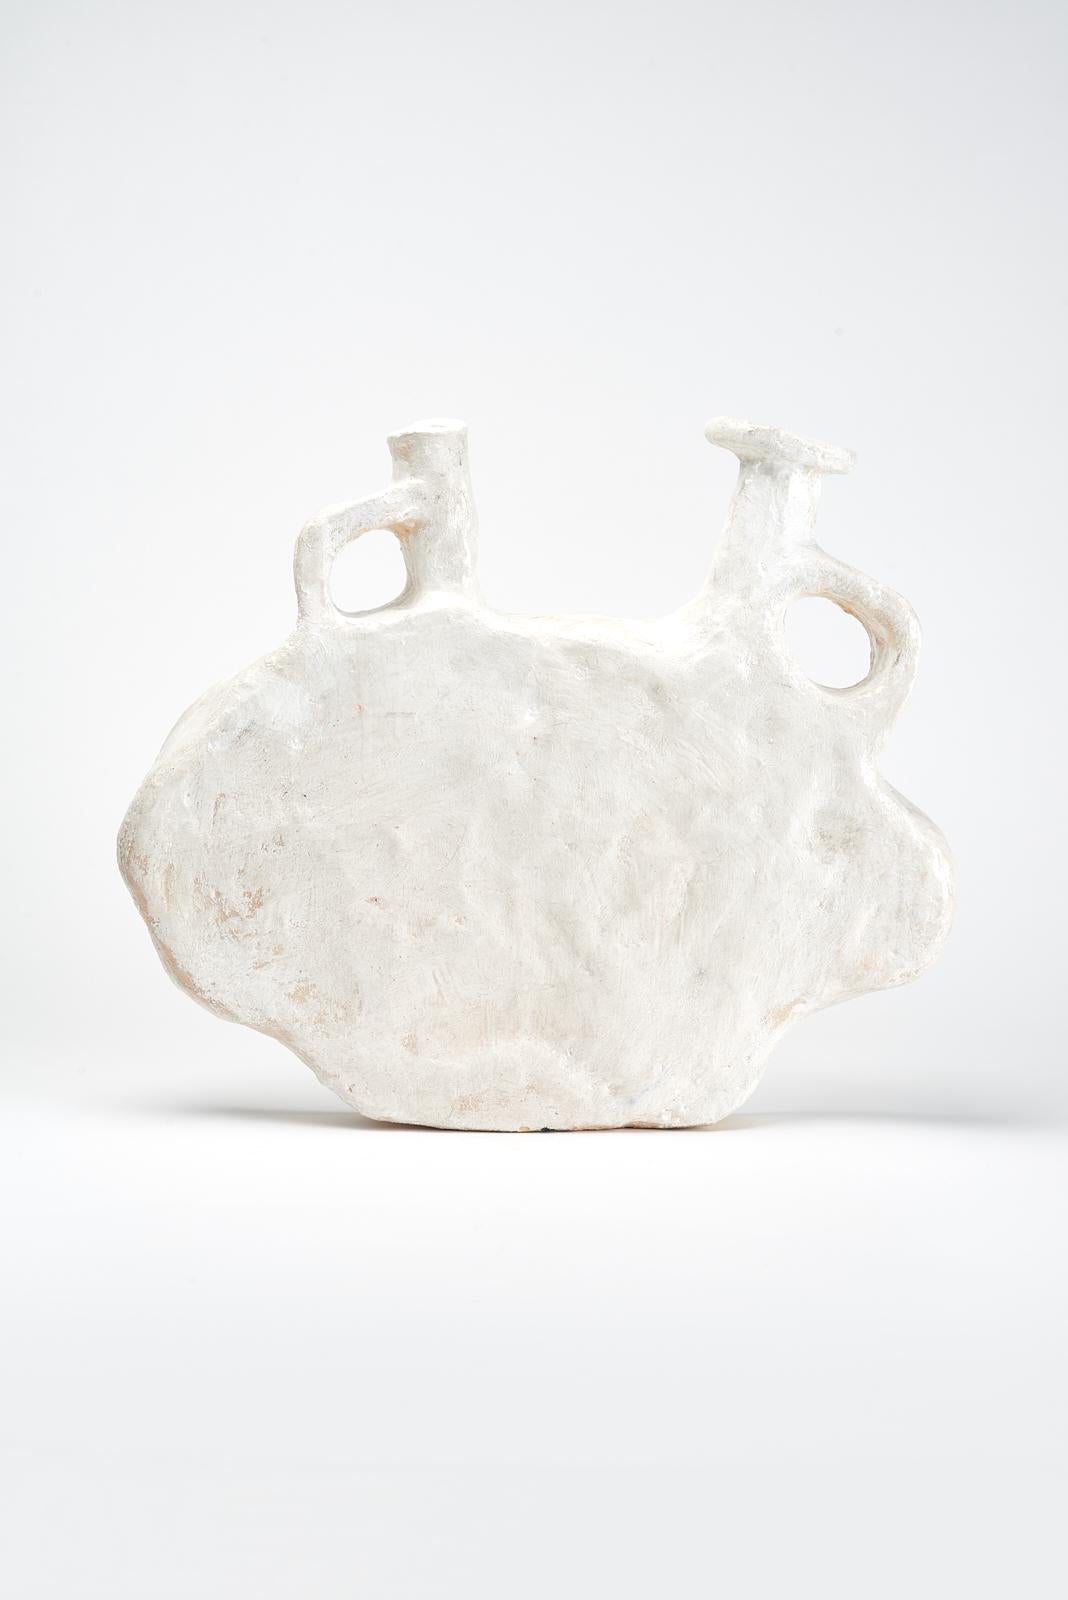 Bili-Vase von Willem Van Hooff.
Abmessungen: B 48 x T 7 x H 38 cm (Die Abmessungen können variieren, da es sich um handgefertigte Stücke handelt, die leichte Größenabweichungen aufweisen können)
MATERIALIEN: Steingut, Keramik, Pigmente und